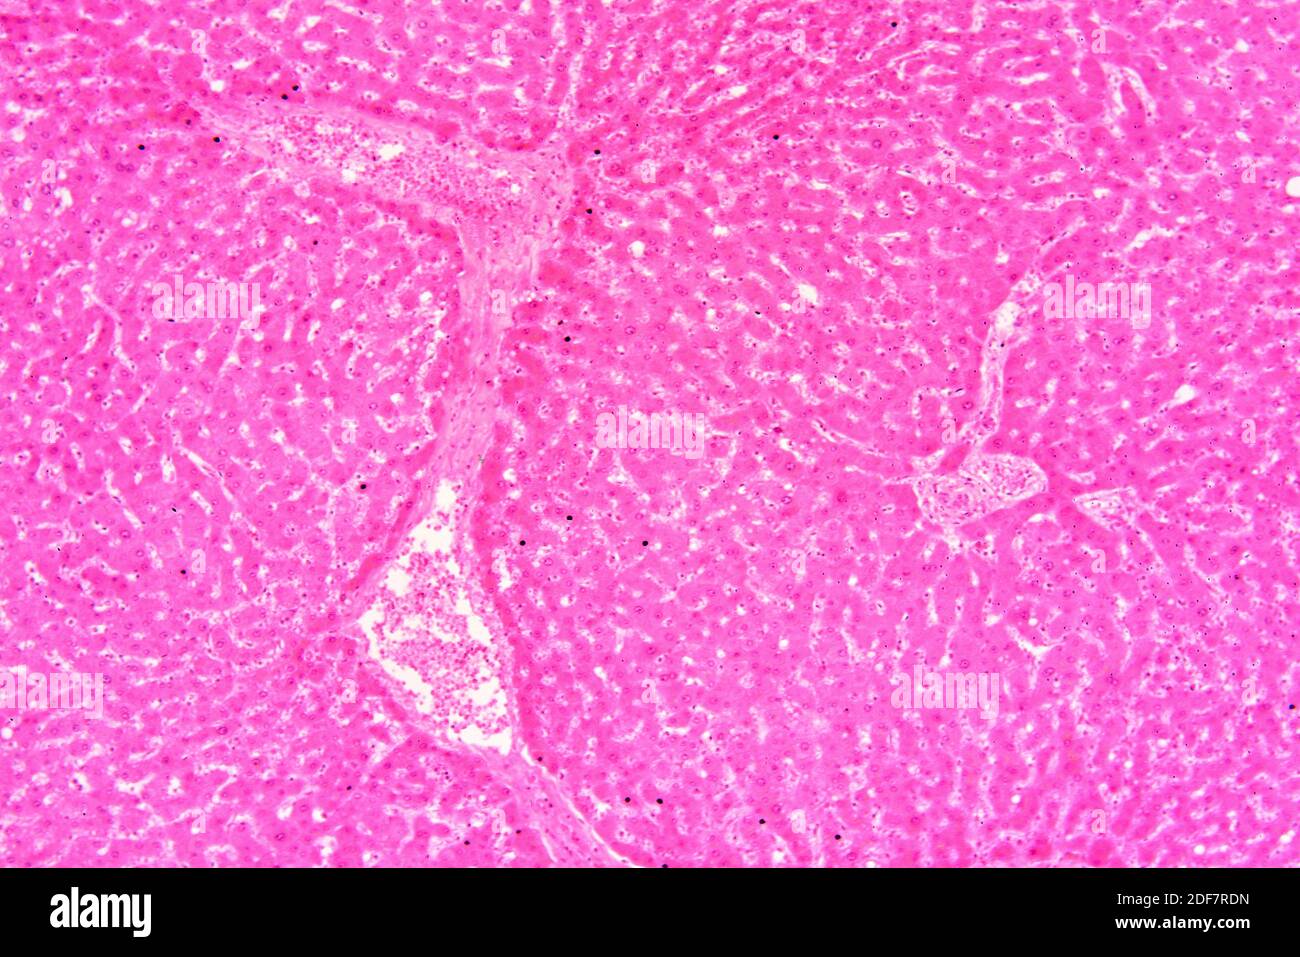 Foie humain avec hépatocytes et vaisseau sanguin. X75 à 10 cm de ...